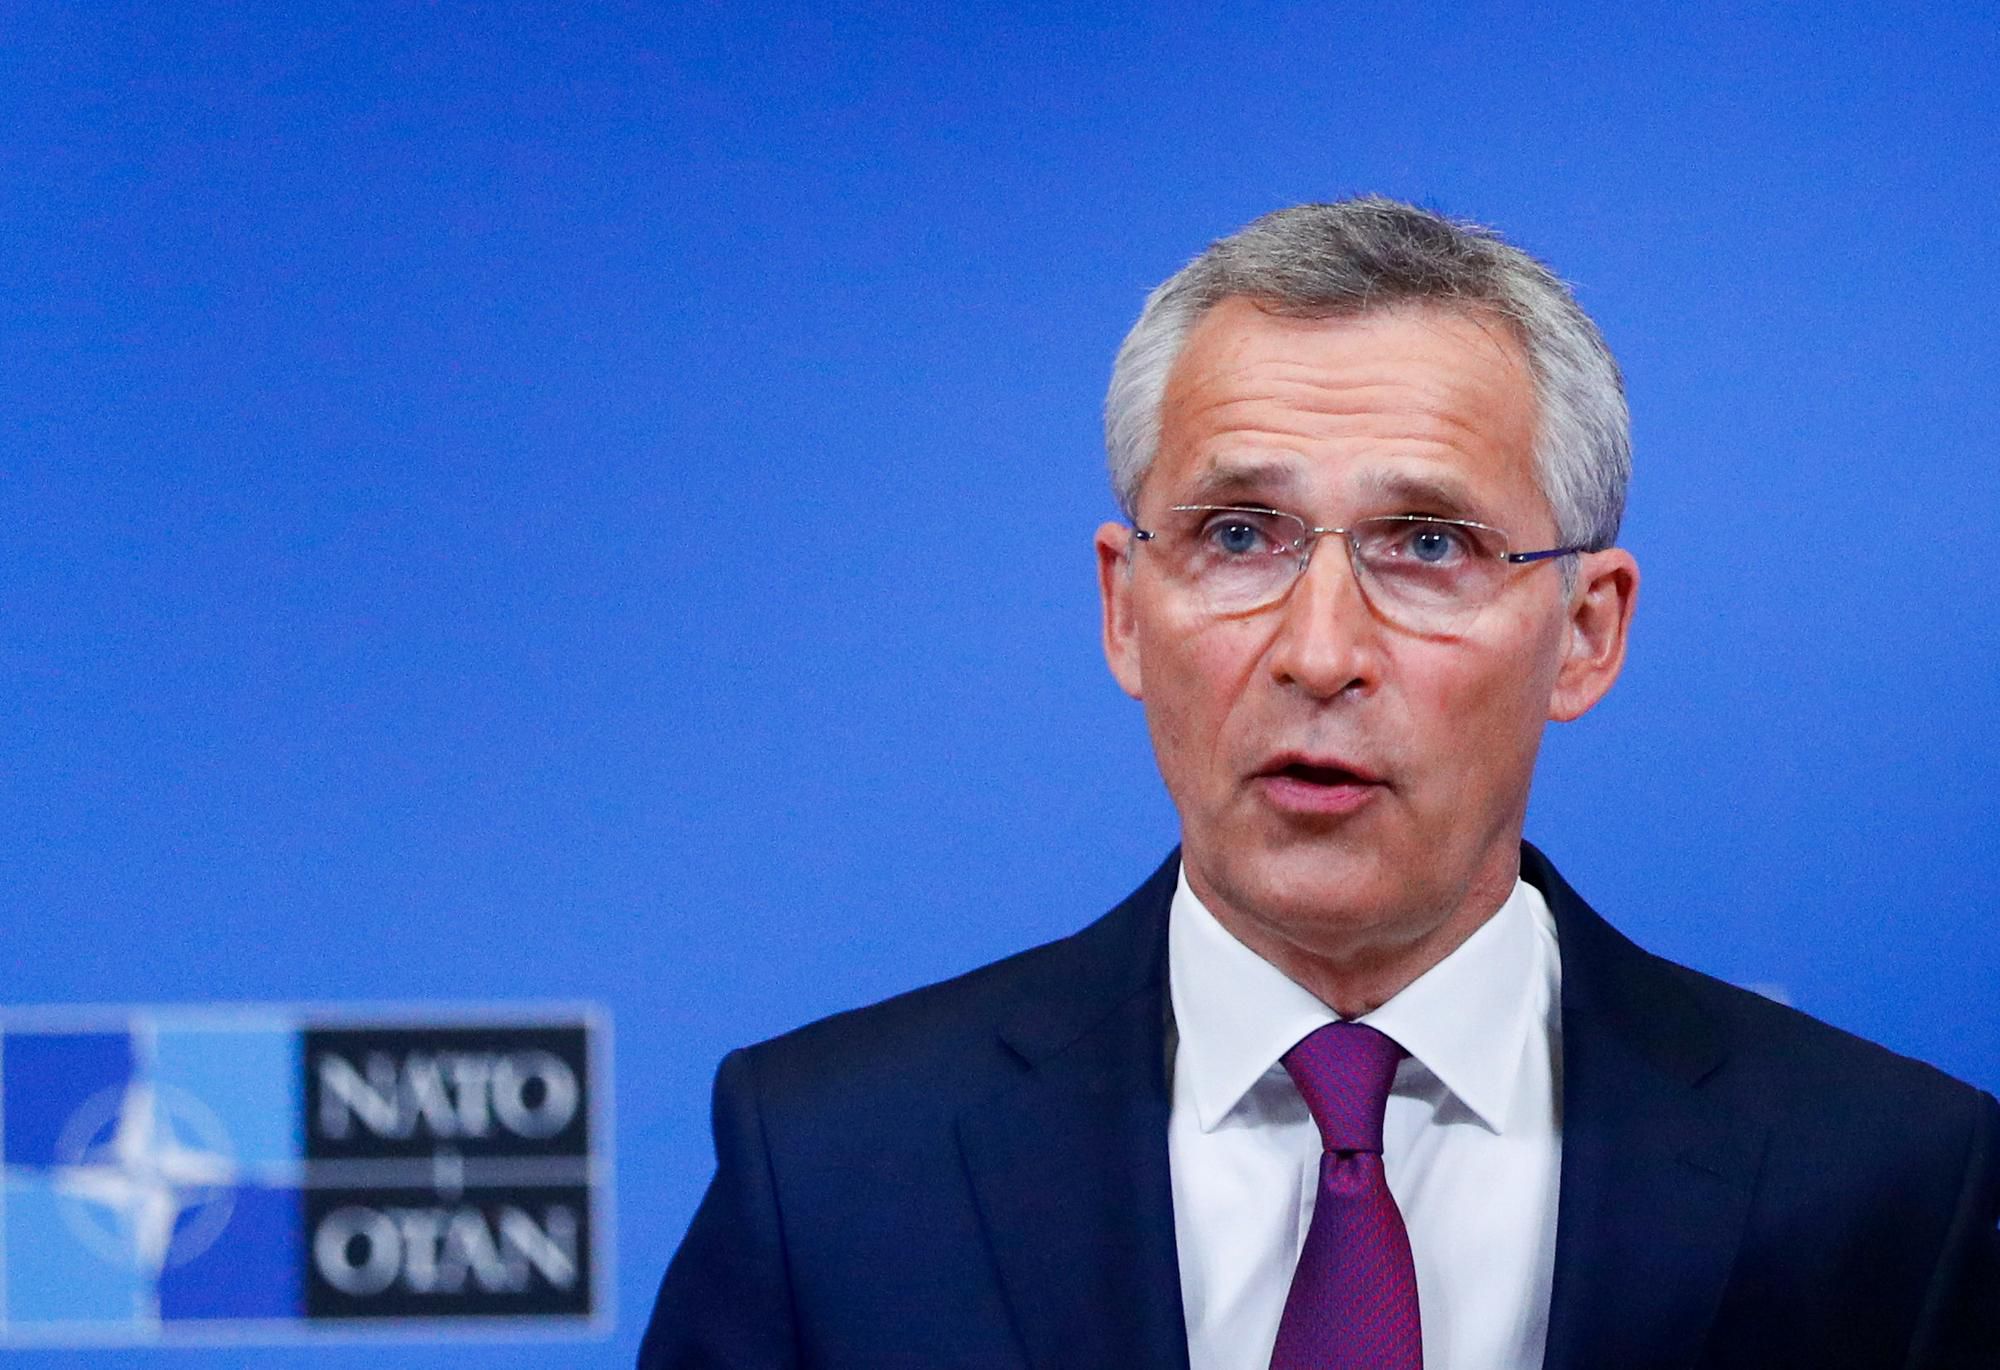 Očakáva sa, že Fínsko spolu so Švédskom v priebehu tohto mesiaca oficiálne požiadajú o vstup do NATO, čo by mohlo ešte viac eskalovať situáciu na severe Európy.